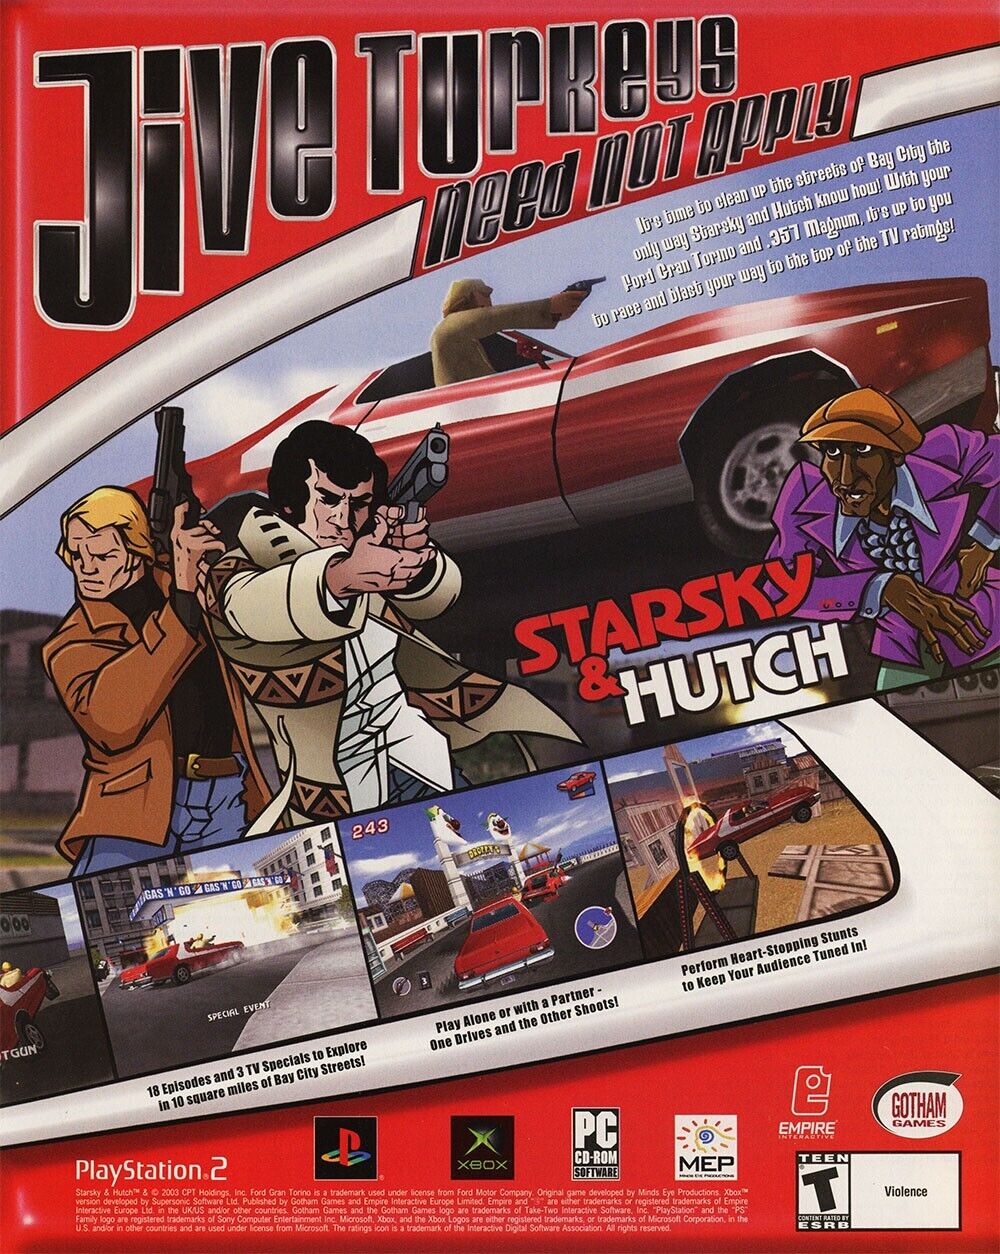 Starsky & Hutch PS2 Original 2004 Ad Authentic Retro TV Funny Video Game Promo